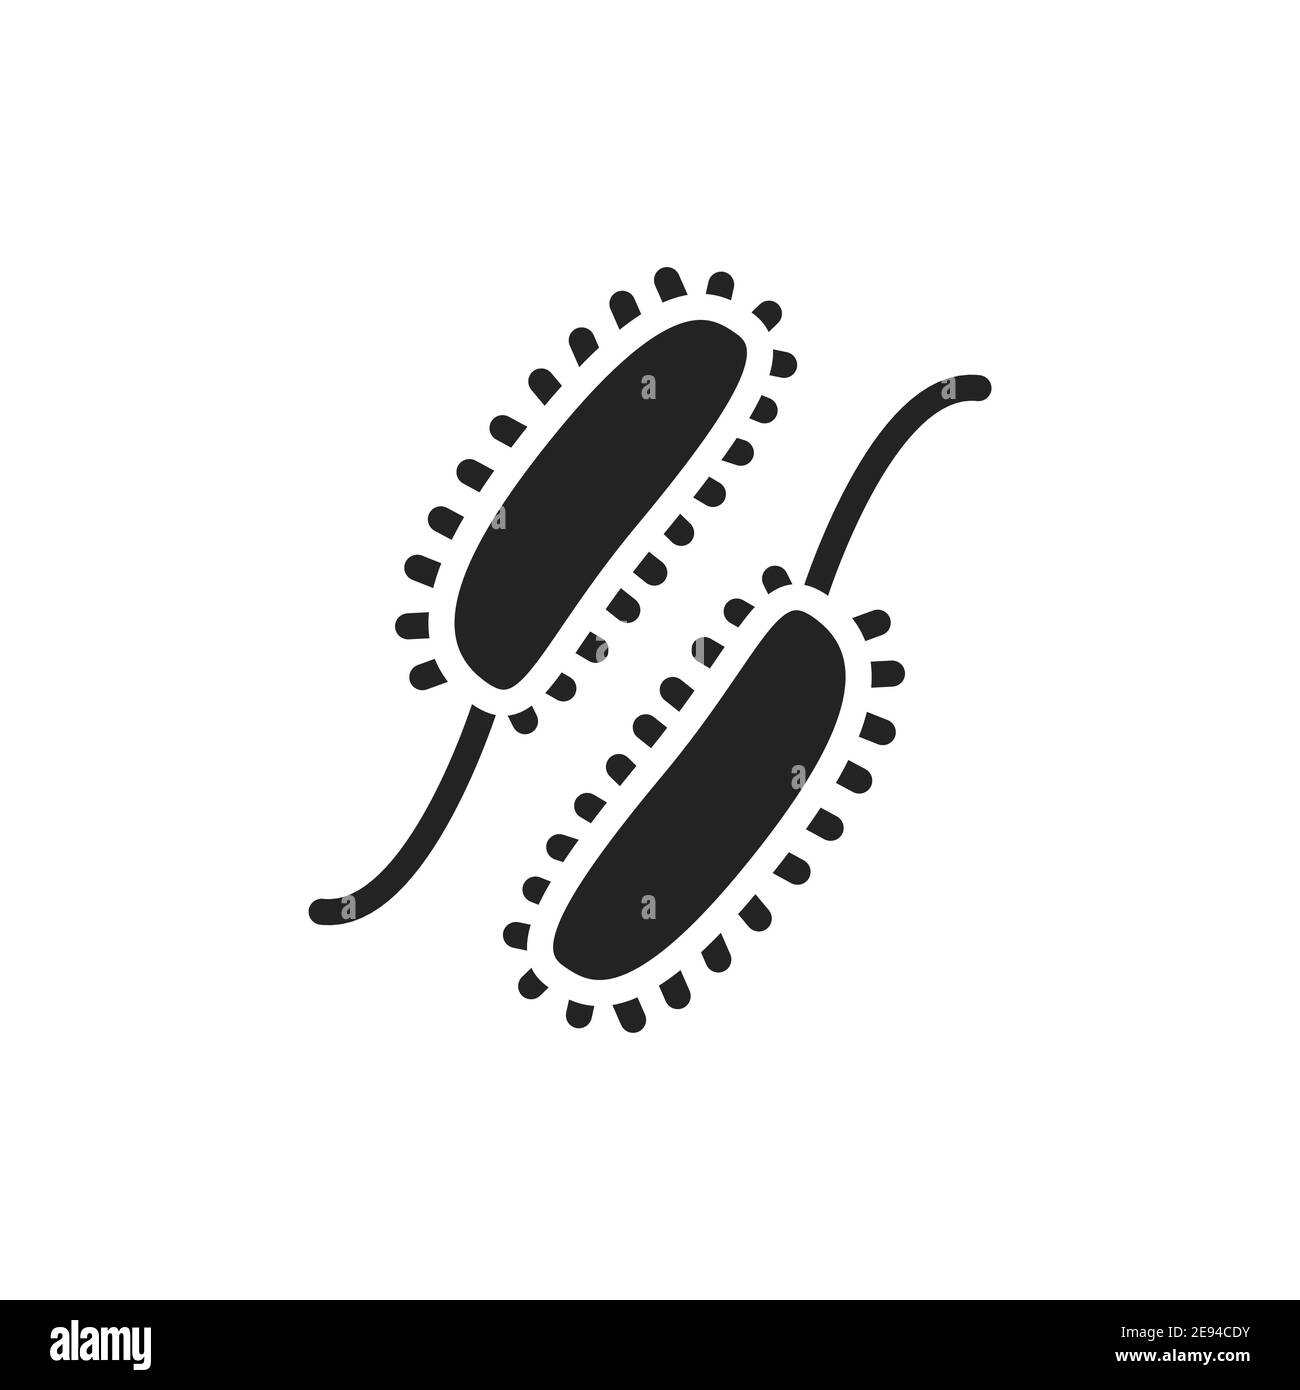 Viruses black glyph icon. Vector illustration. Outline pictogram. Stock Vector